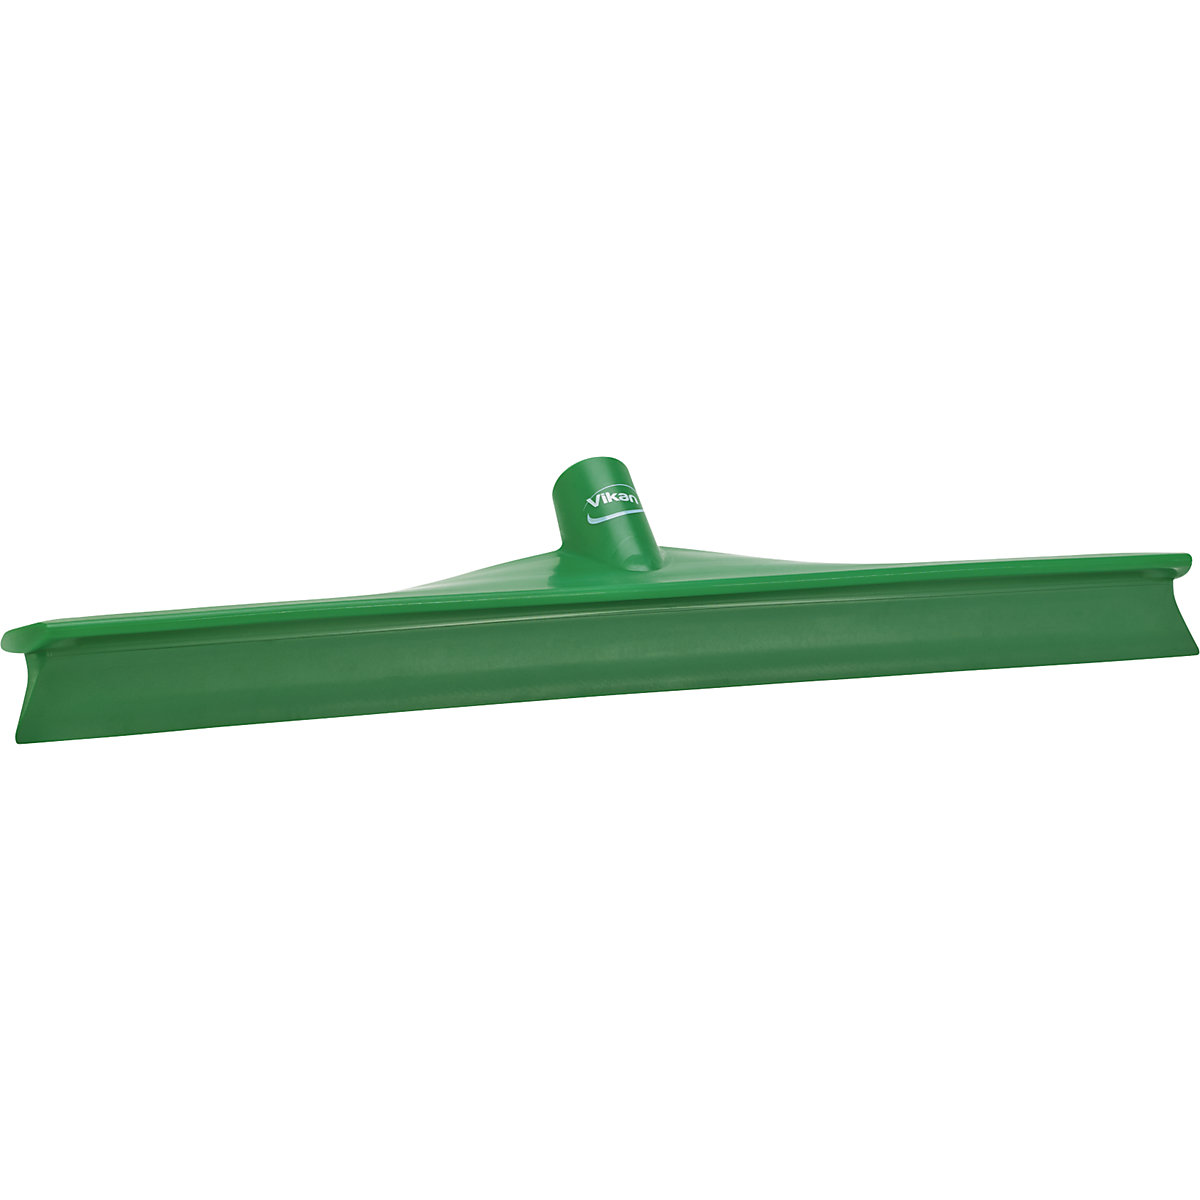 Brisalec za vodo – Vikan, dolžina 500 mm, DE 15 kosov, zelene barve